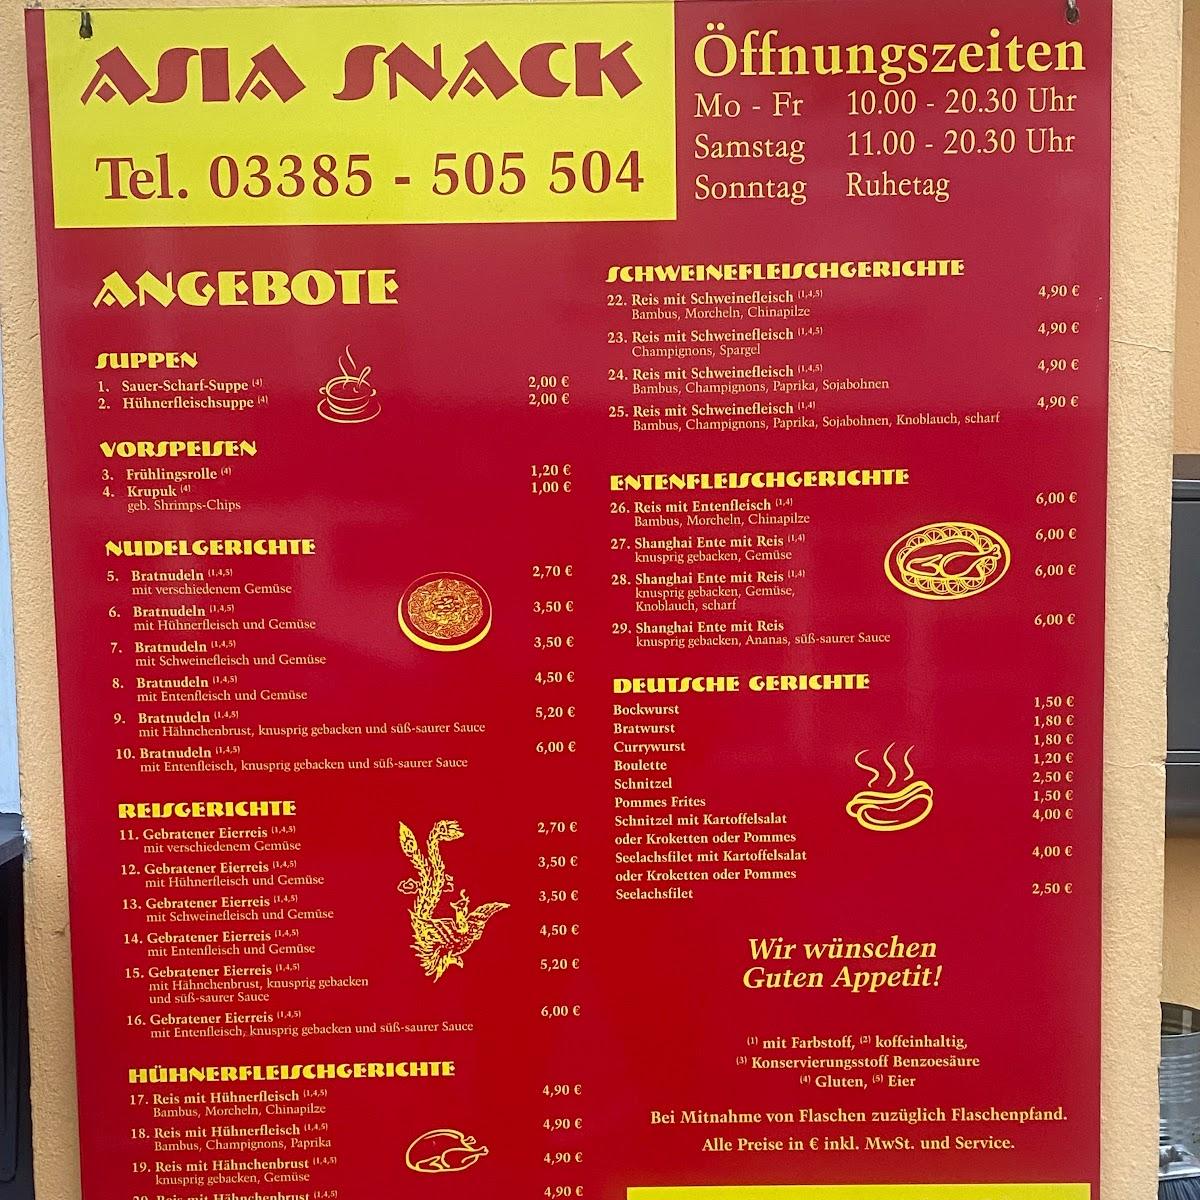 Restaurant "Asia - Snack" in Rathenow